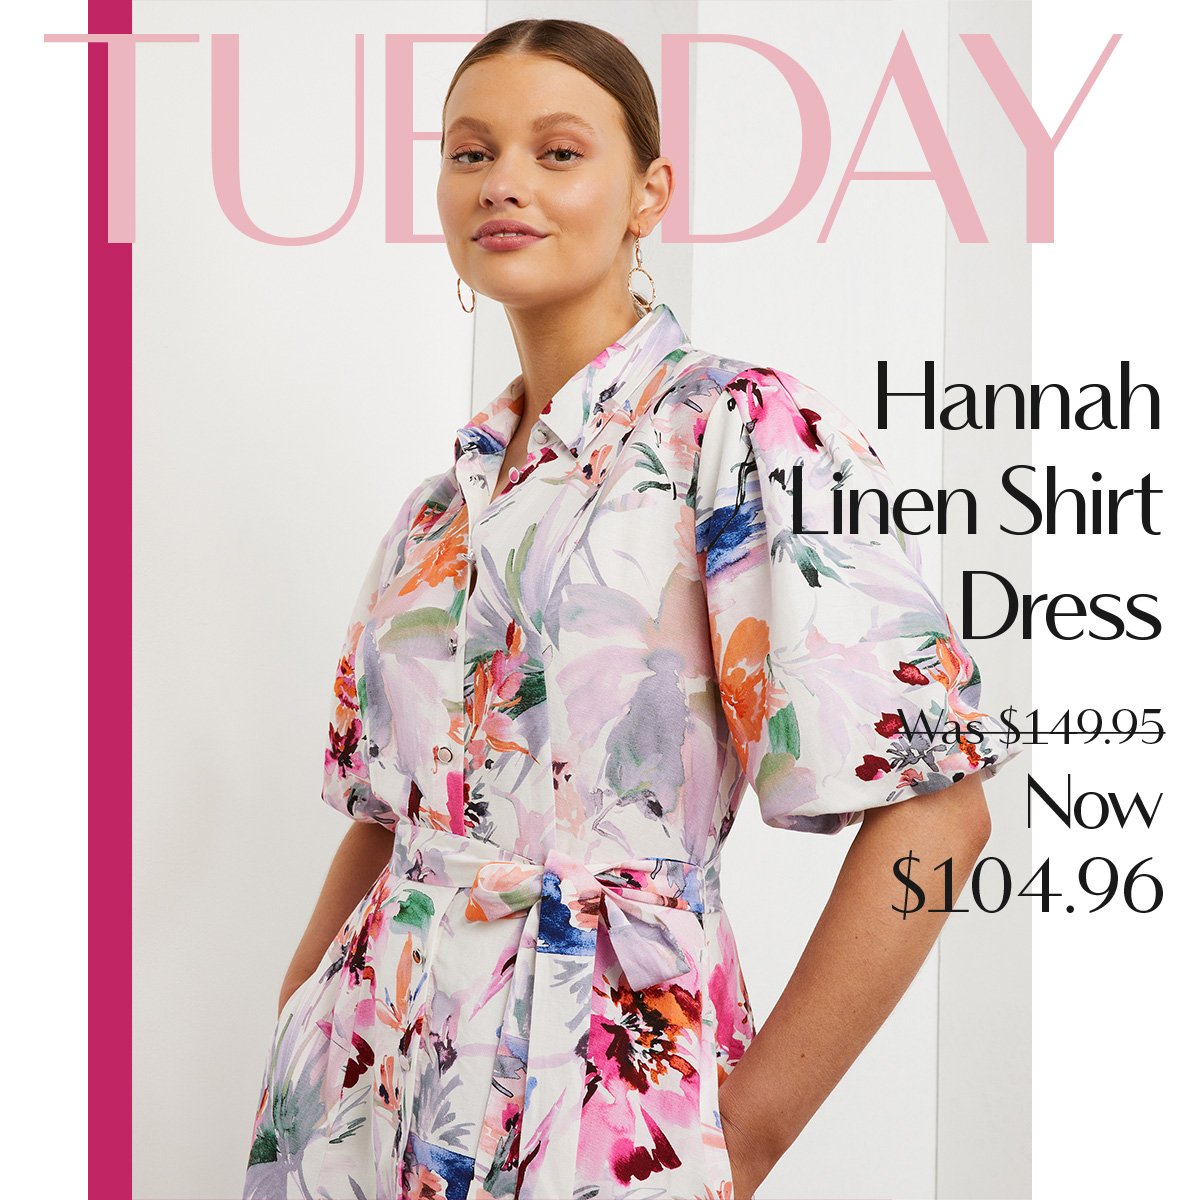 Tuesday - Hannah Linen Dress